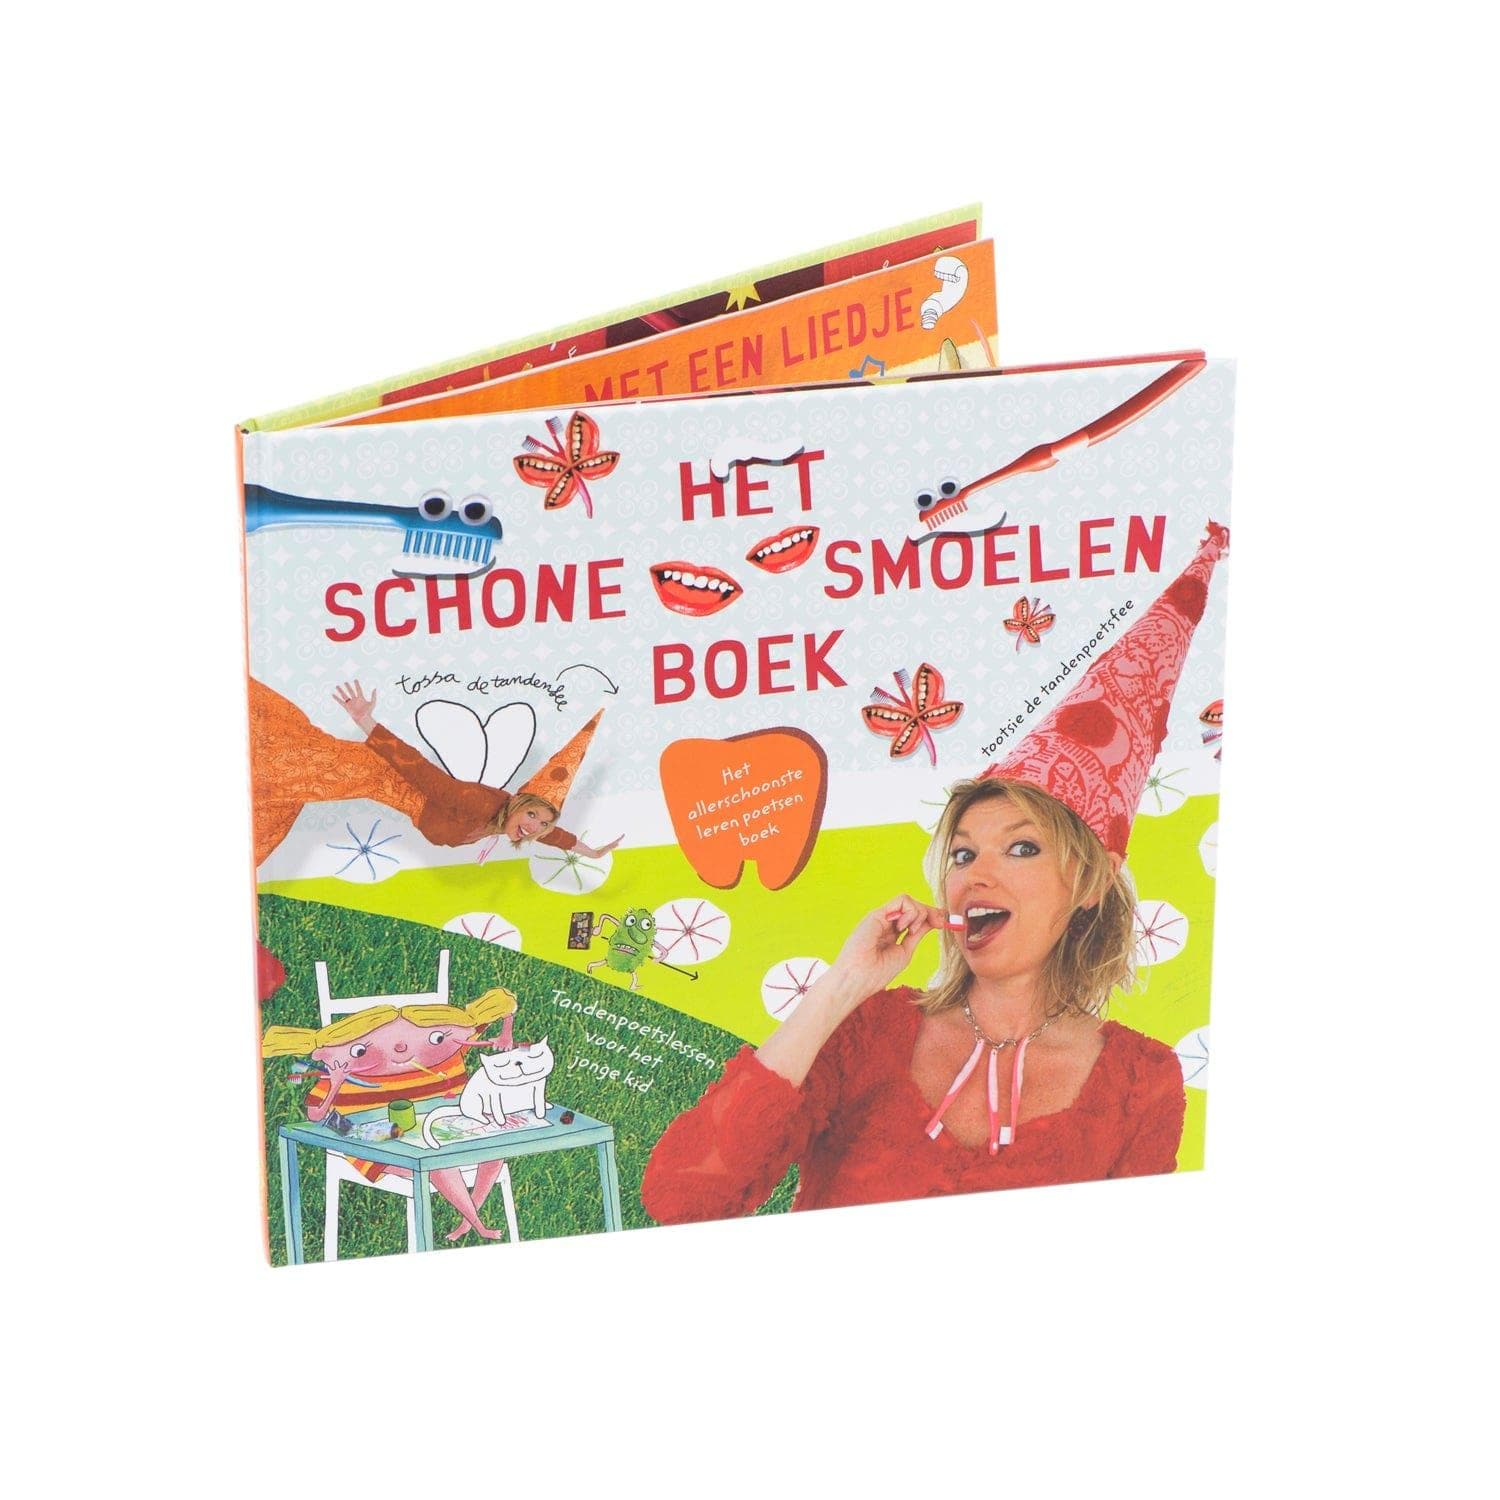 (NL) Het schone smoelen boek - Difrax